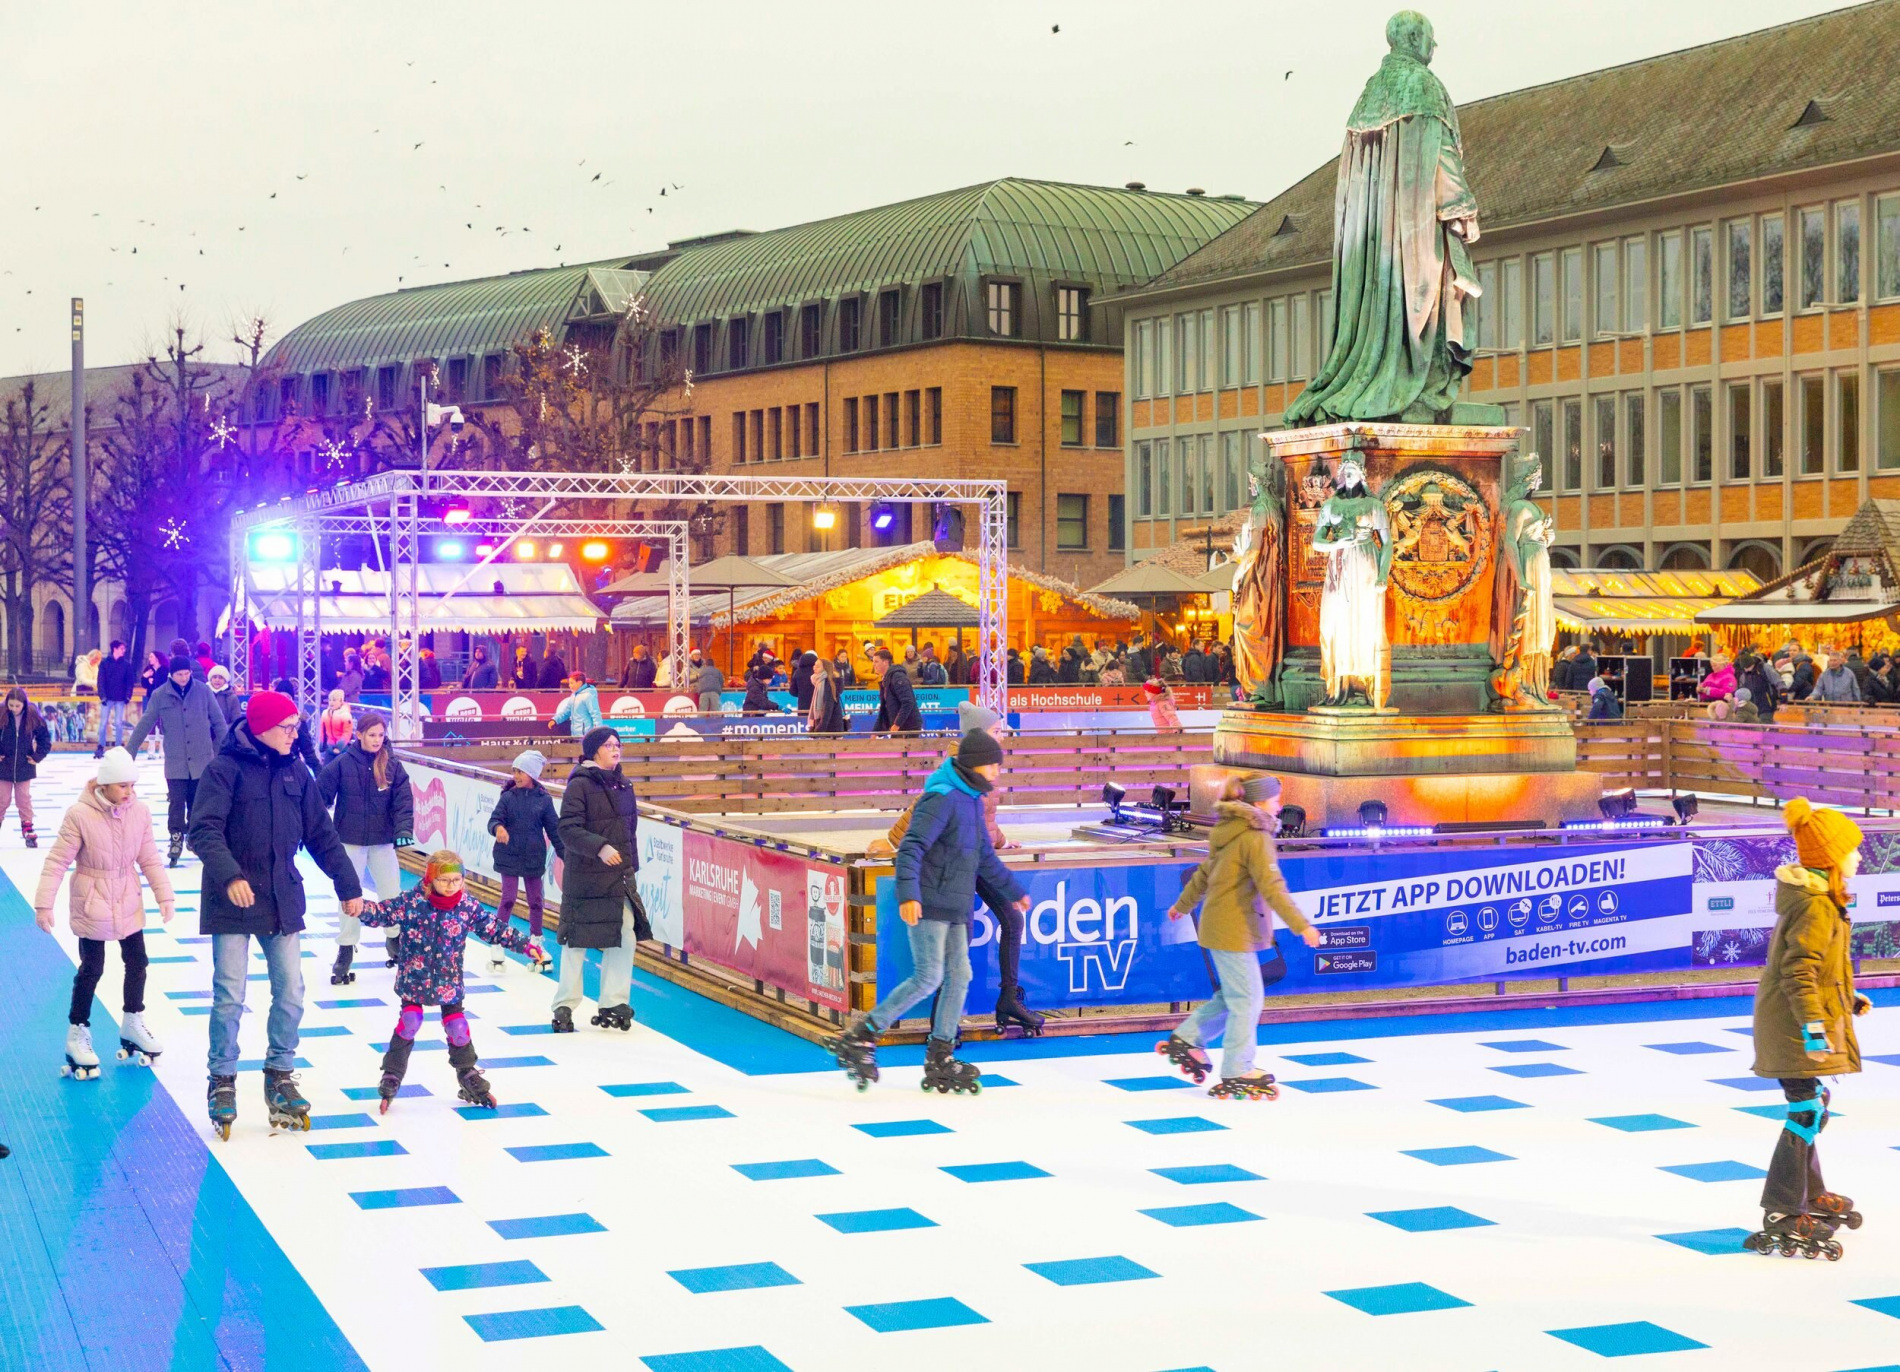 Stadtwerke Karlsruhe WINTERZEIT zieht positive Bilanz: Rund 55.000 Menschen nutzen Alternative zur Eislaufbahn